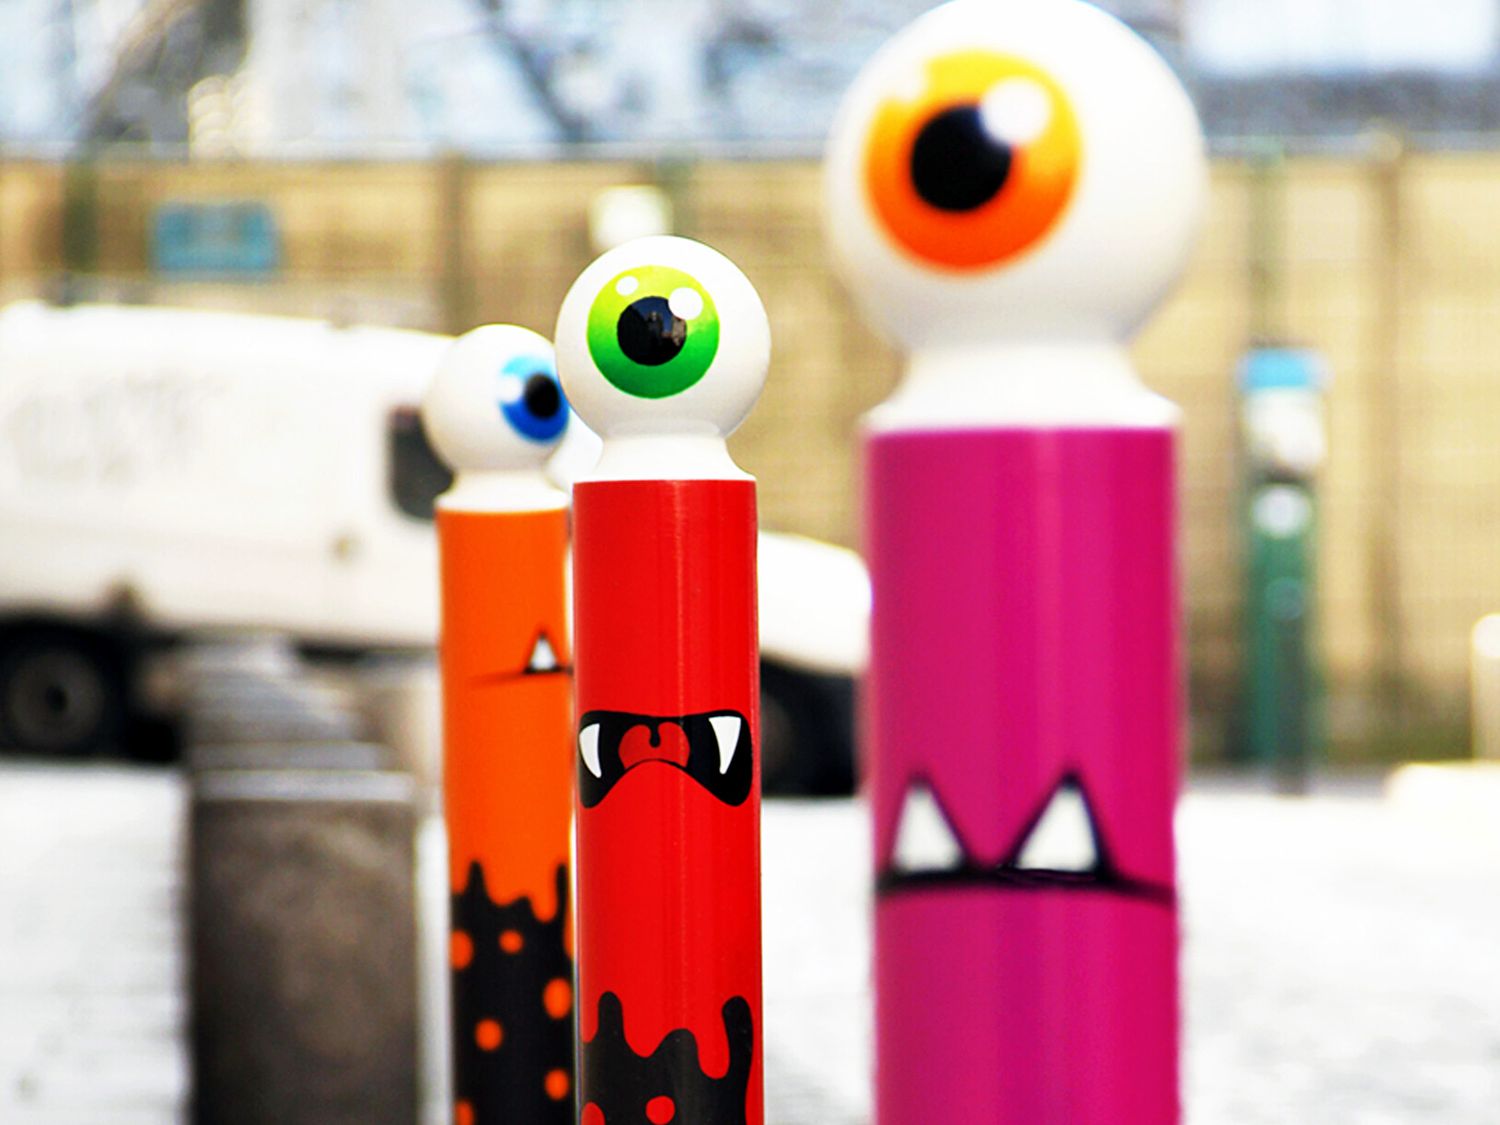 Réalisée il y a plus de 10 ans dans les rues du quartier de la Bastille à Paris, “The Stupid Monsters” est sans doute une des séries les plus emblématiques de l’artiste pour le public parisien.